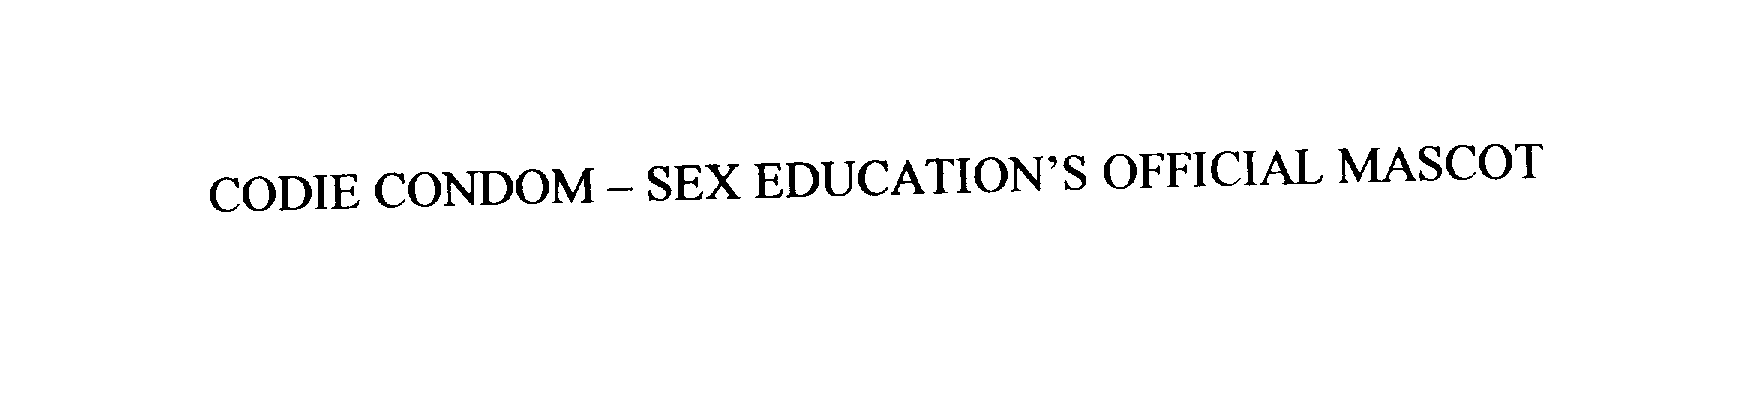  CODIE CONDOM - SEX EDUCATION'S OFFICIALMASCOT